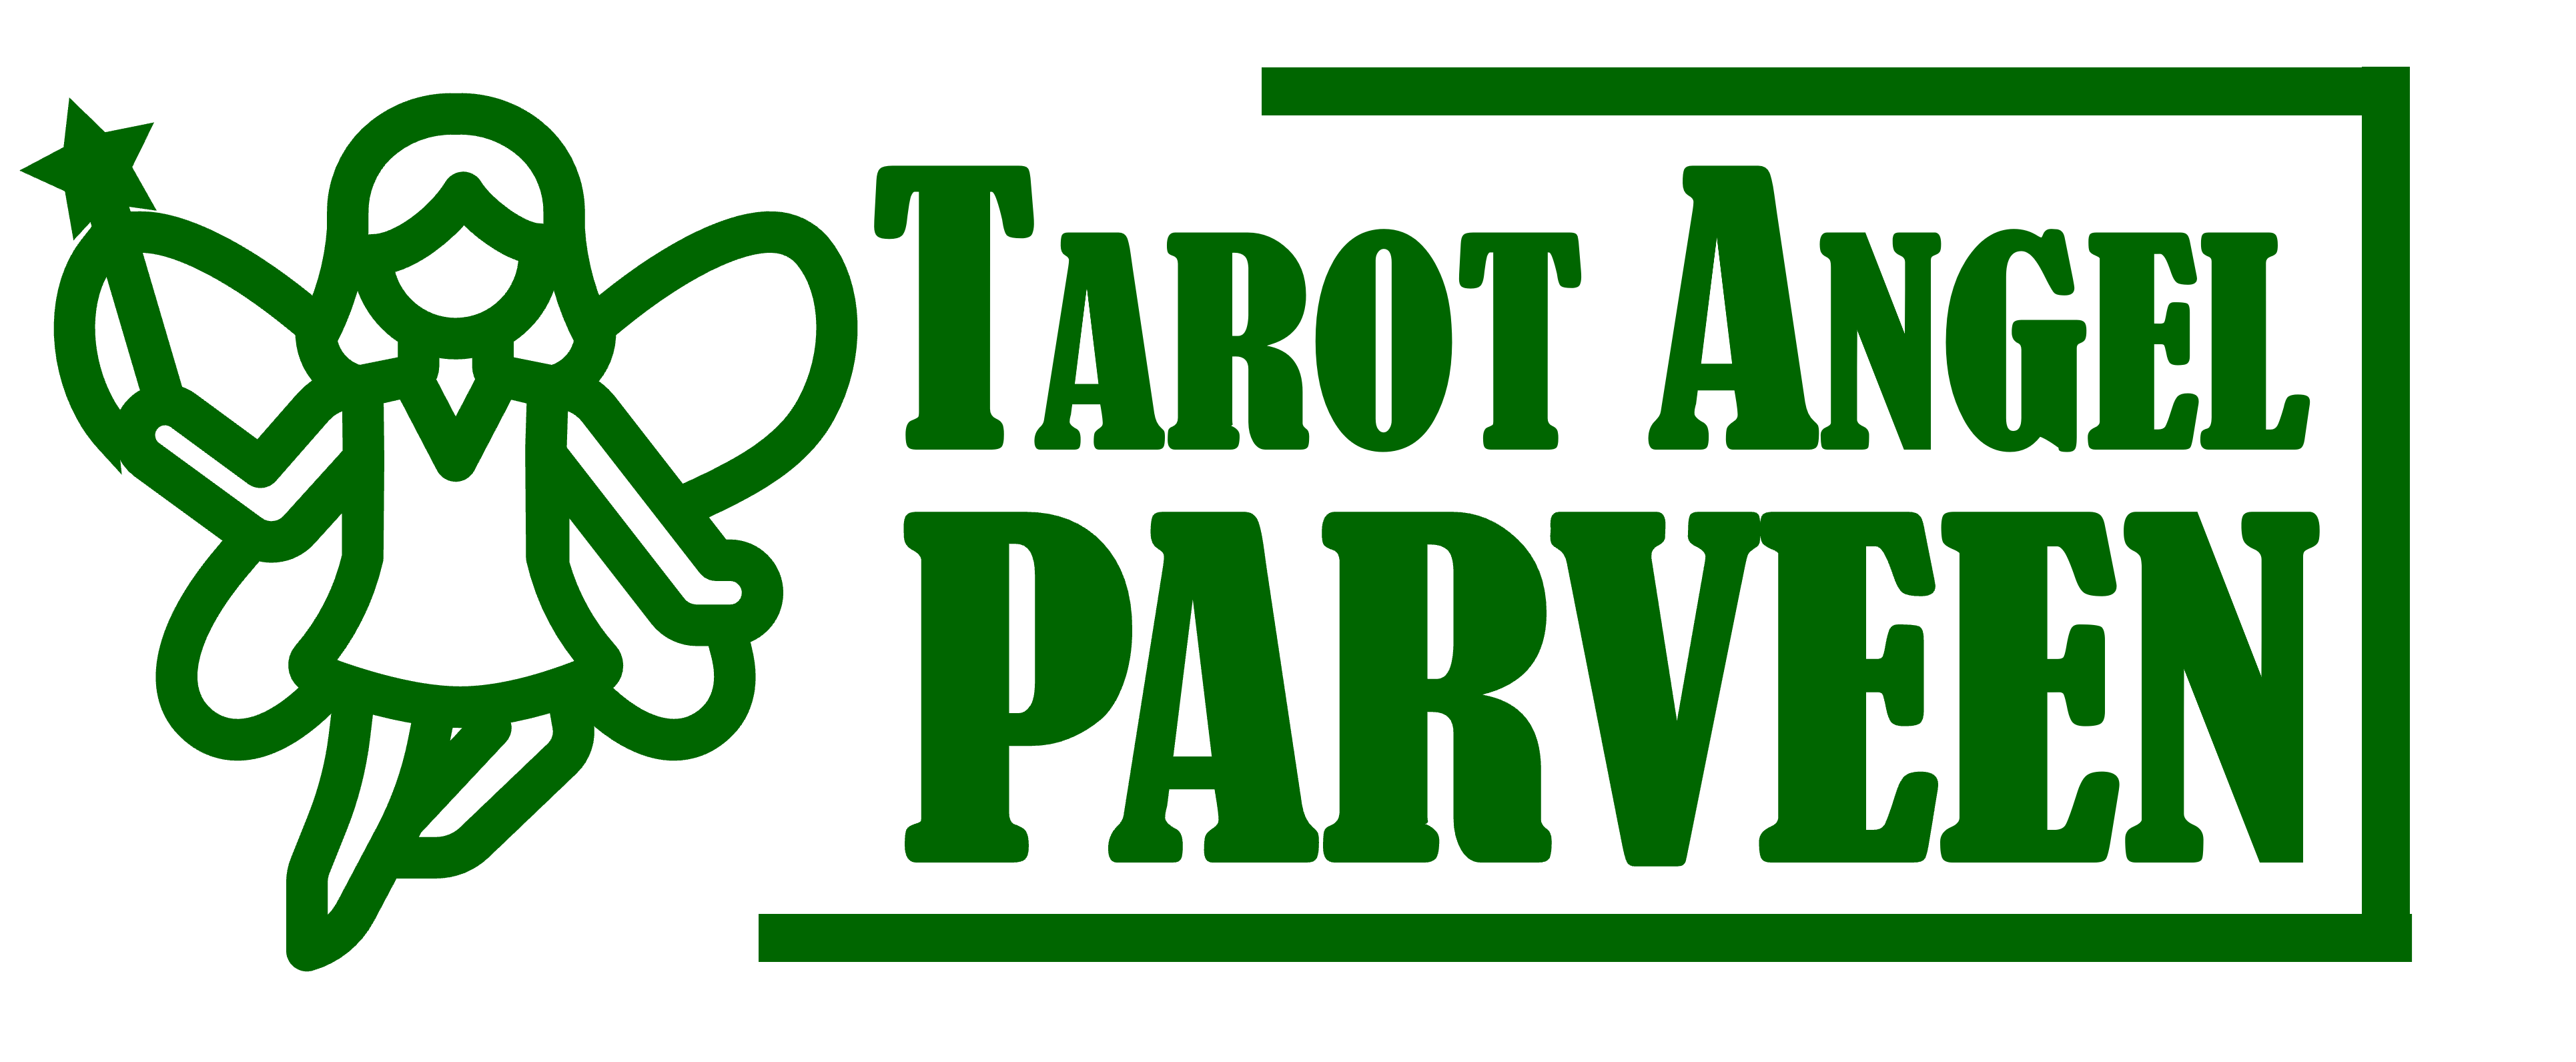 Tarot Angel Parvin